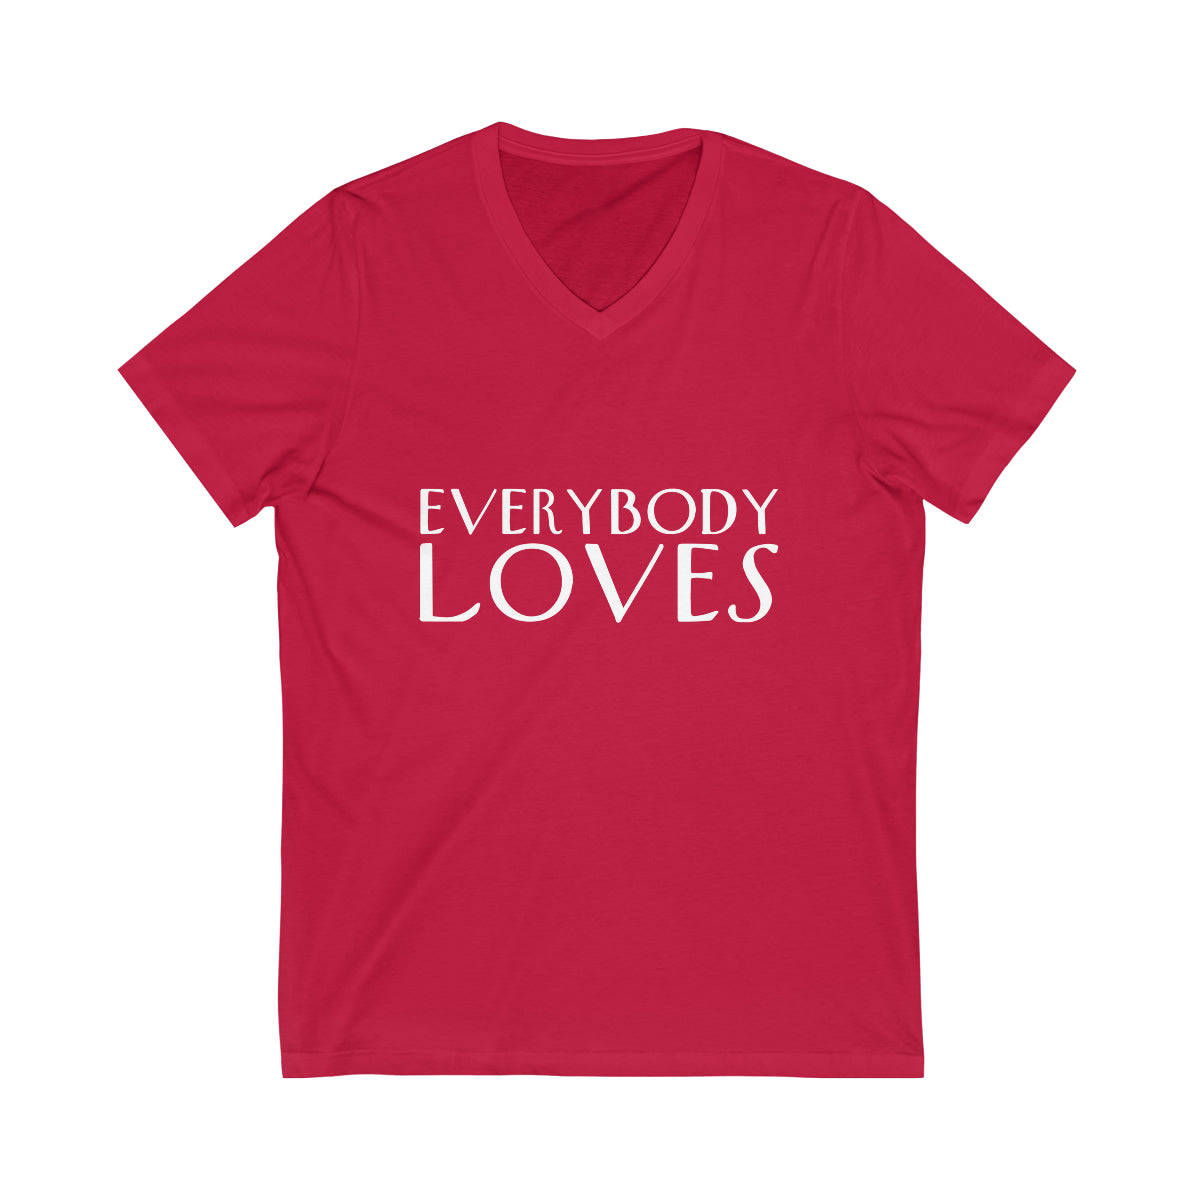 "Everybody Loves" Tee